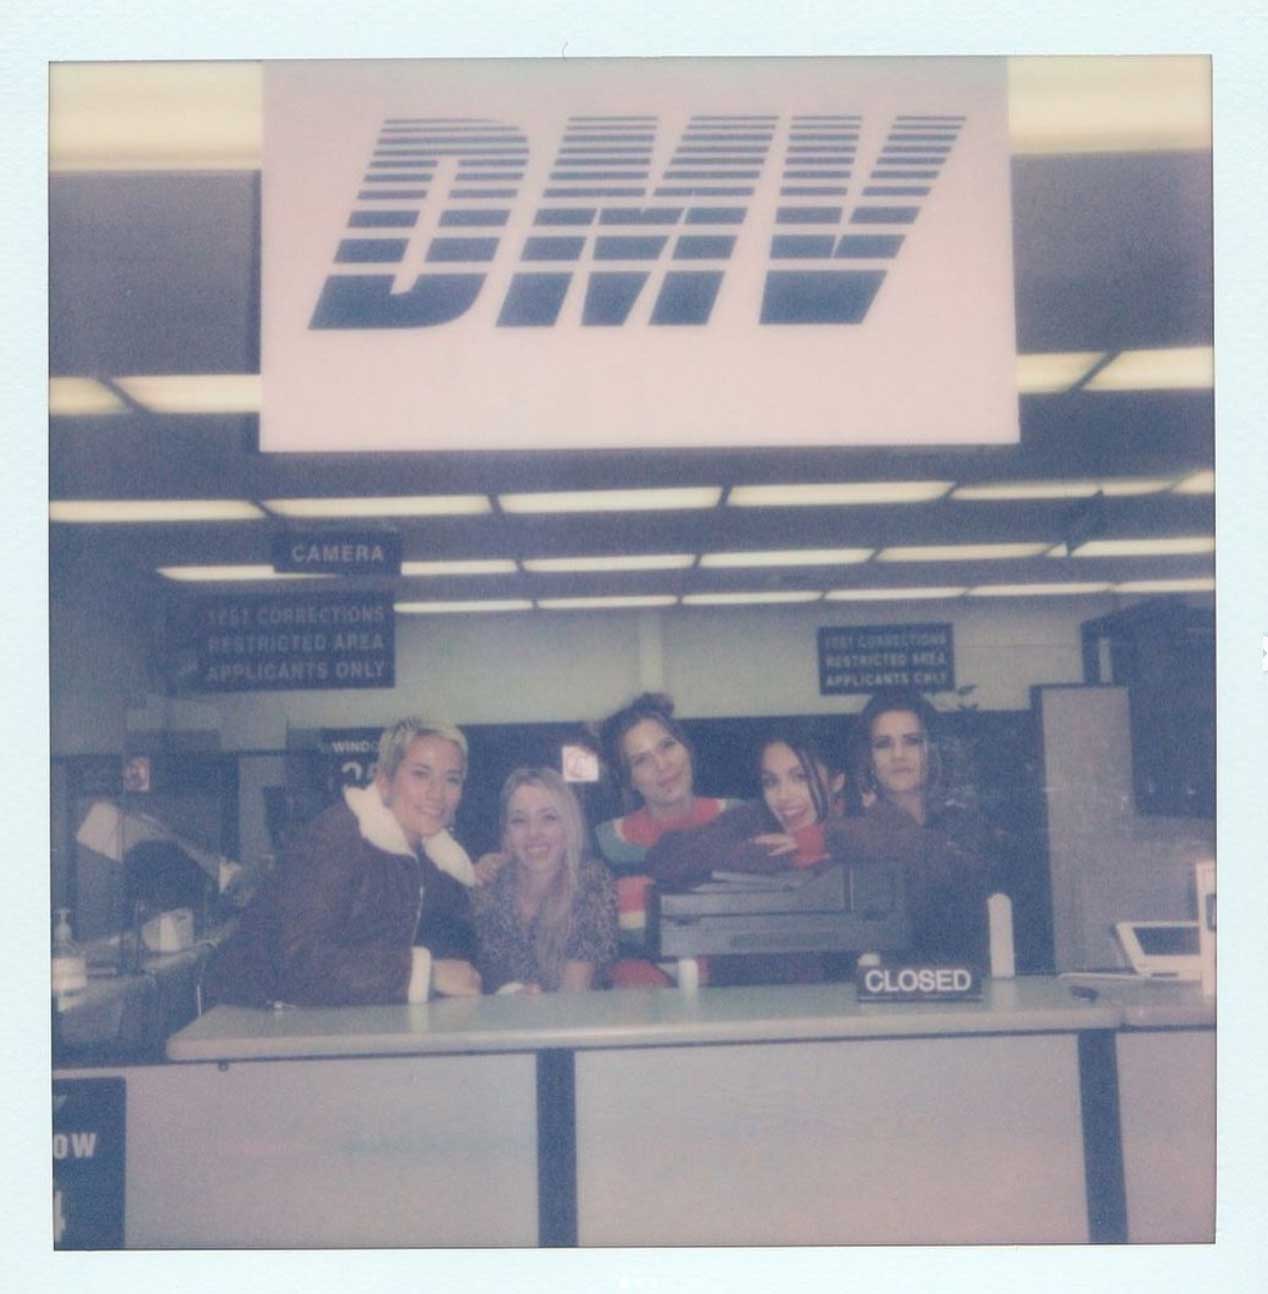 Liv postet dette polaroidbildet fra DMV med bandet sitt til sine 20 millioner IG-følgere (Instagram/oliviarodrigo)